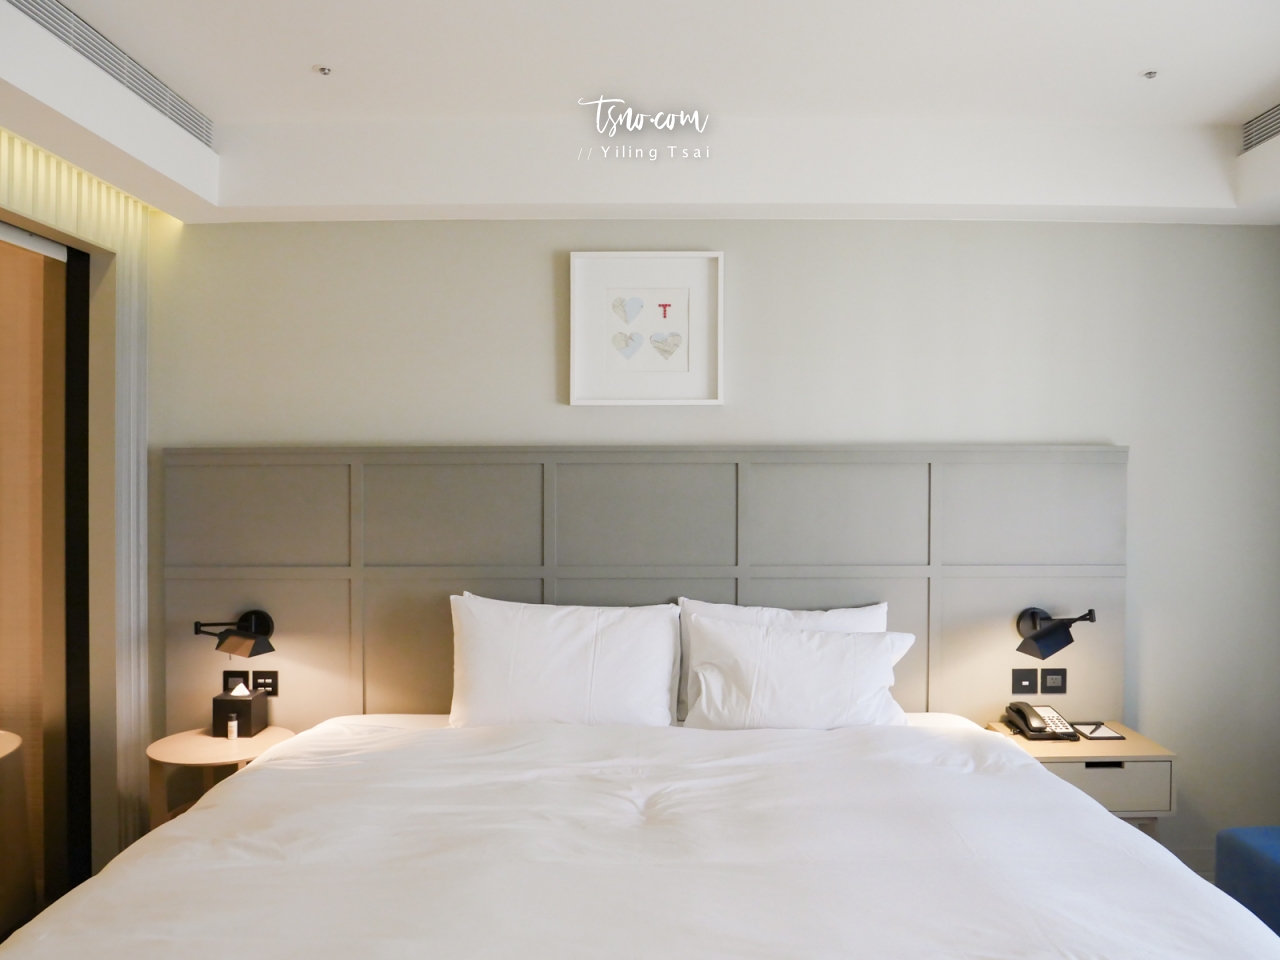 高雄飯店推薦 Greet Inn 喜迎旅店 市議會站質感設計平價飯店